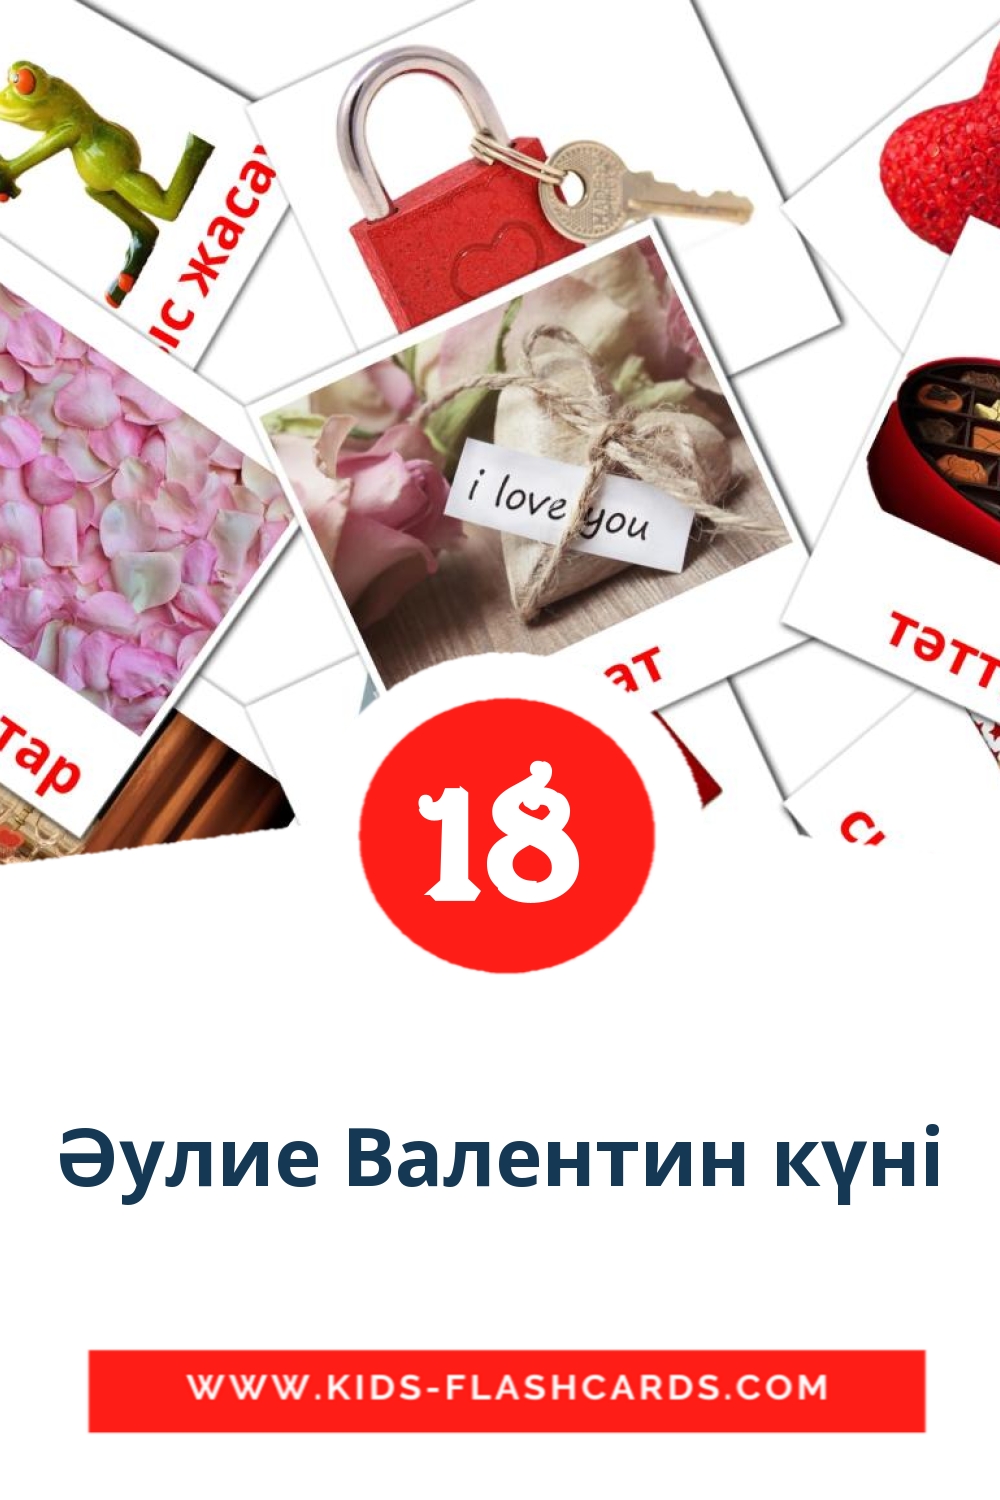 18 Cartões com Imagens de Әулие Валентин күні para Jardim de Infância em kazakh